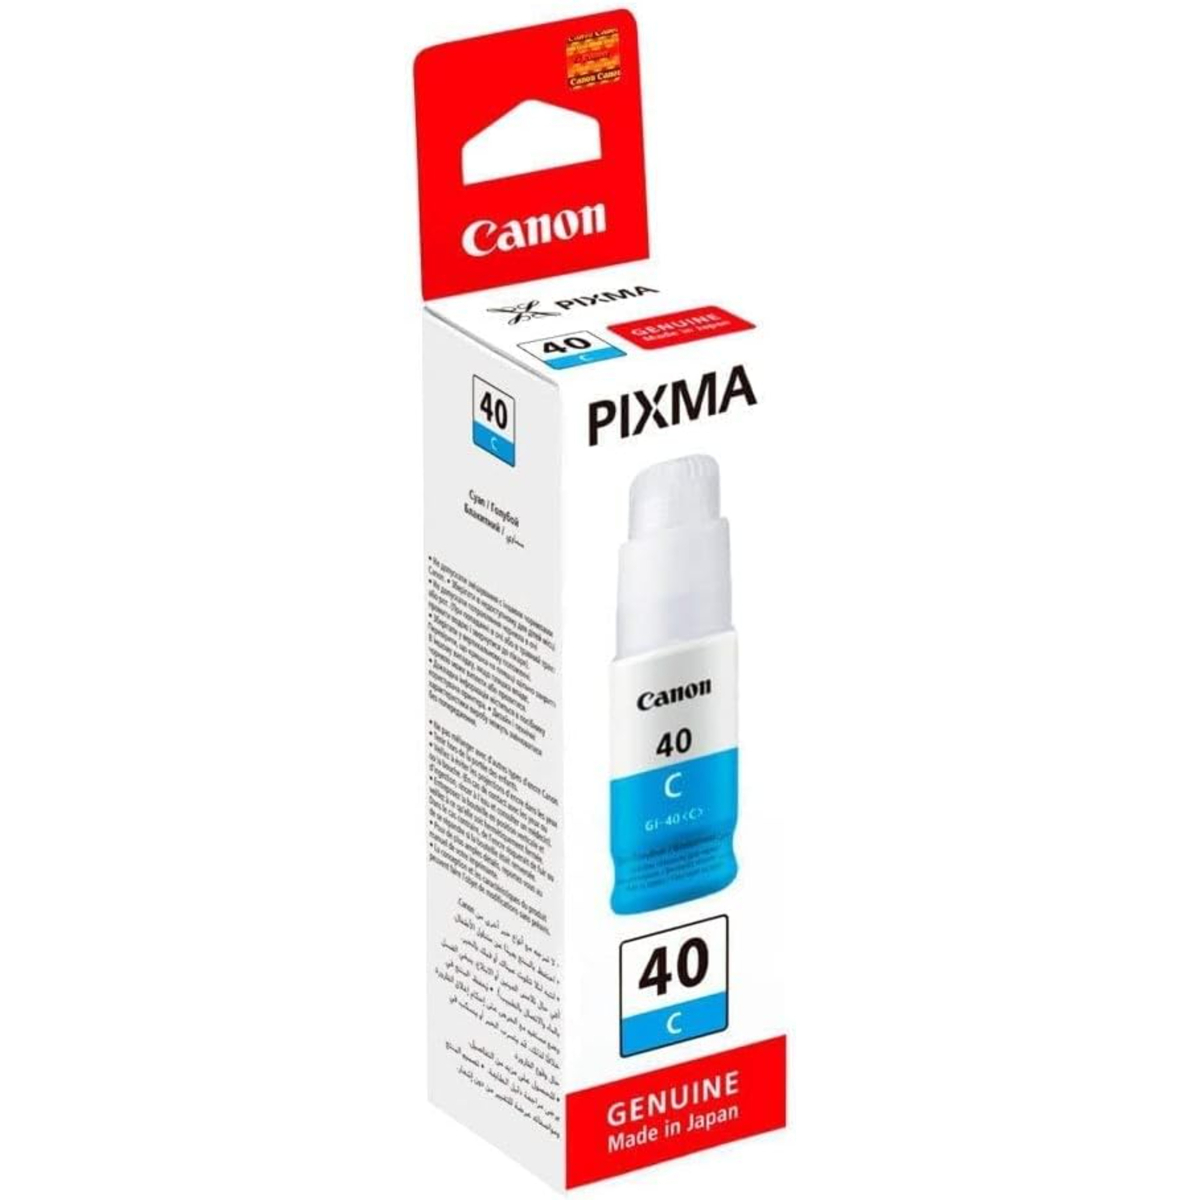 Canon M40 Ink Cartridge, Cyan